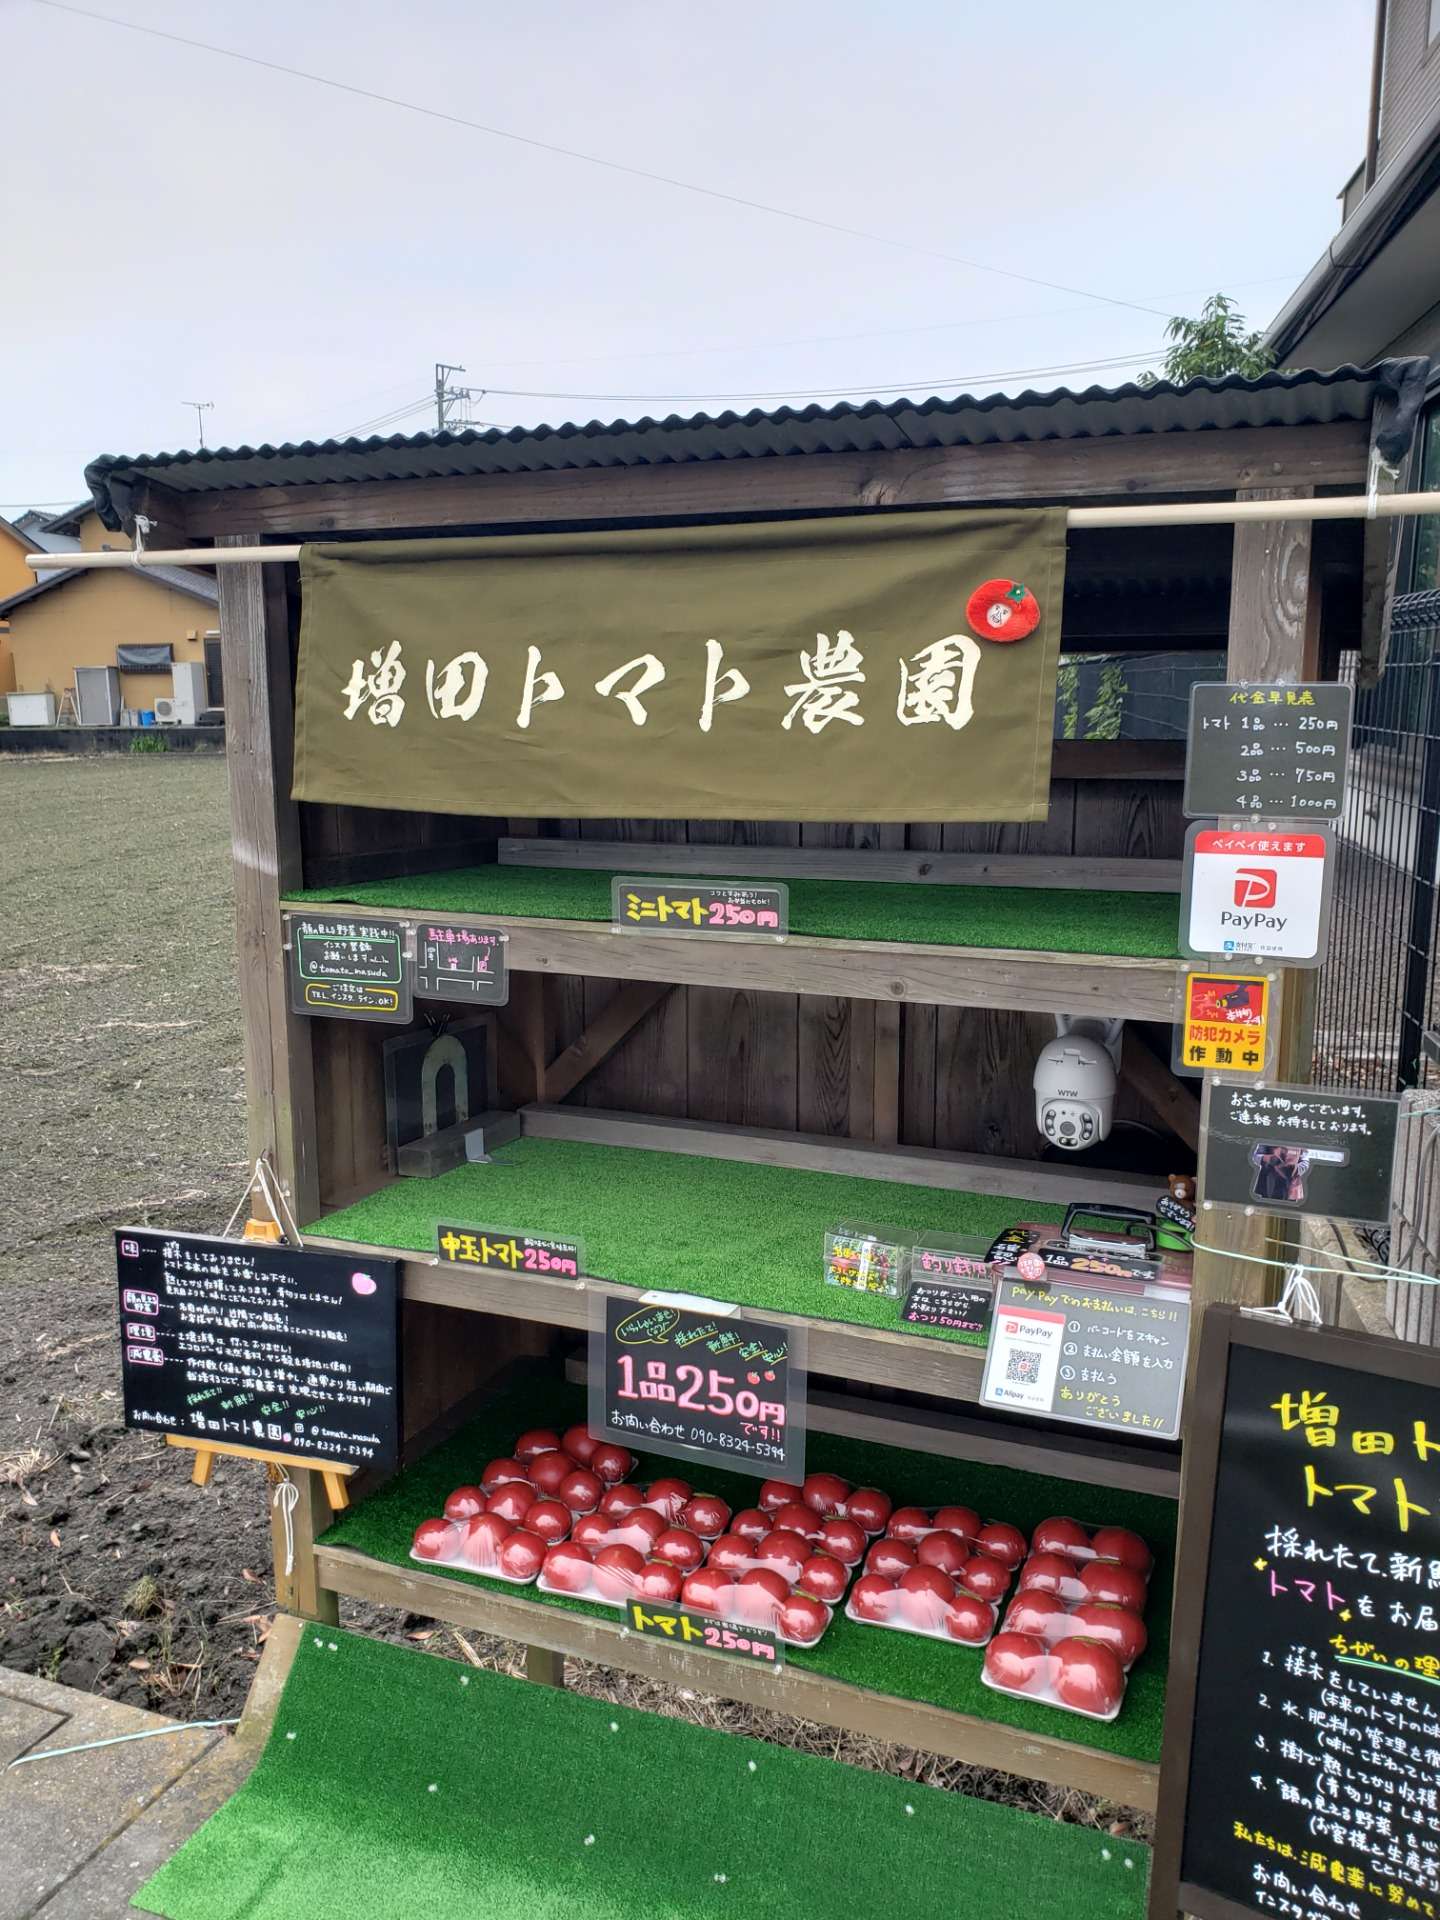 増田トマト農園